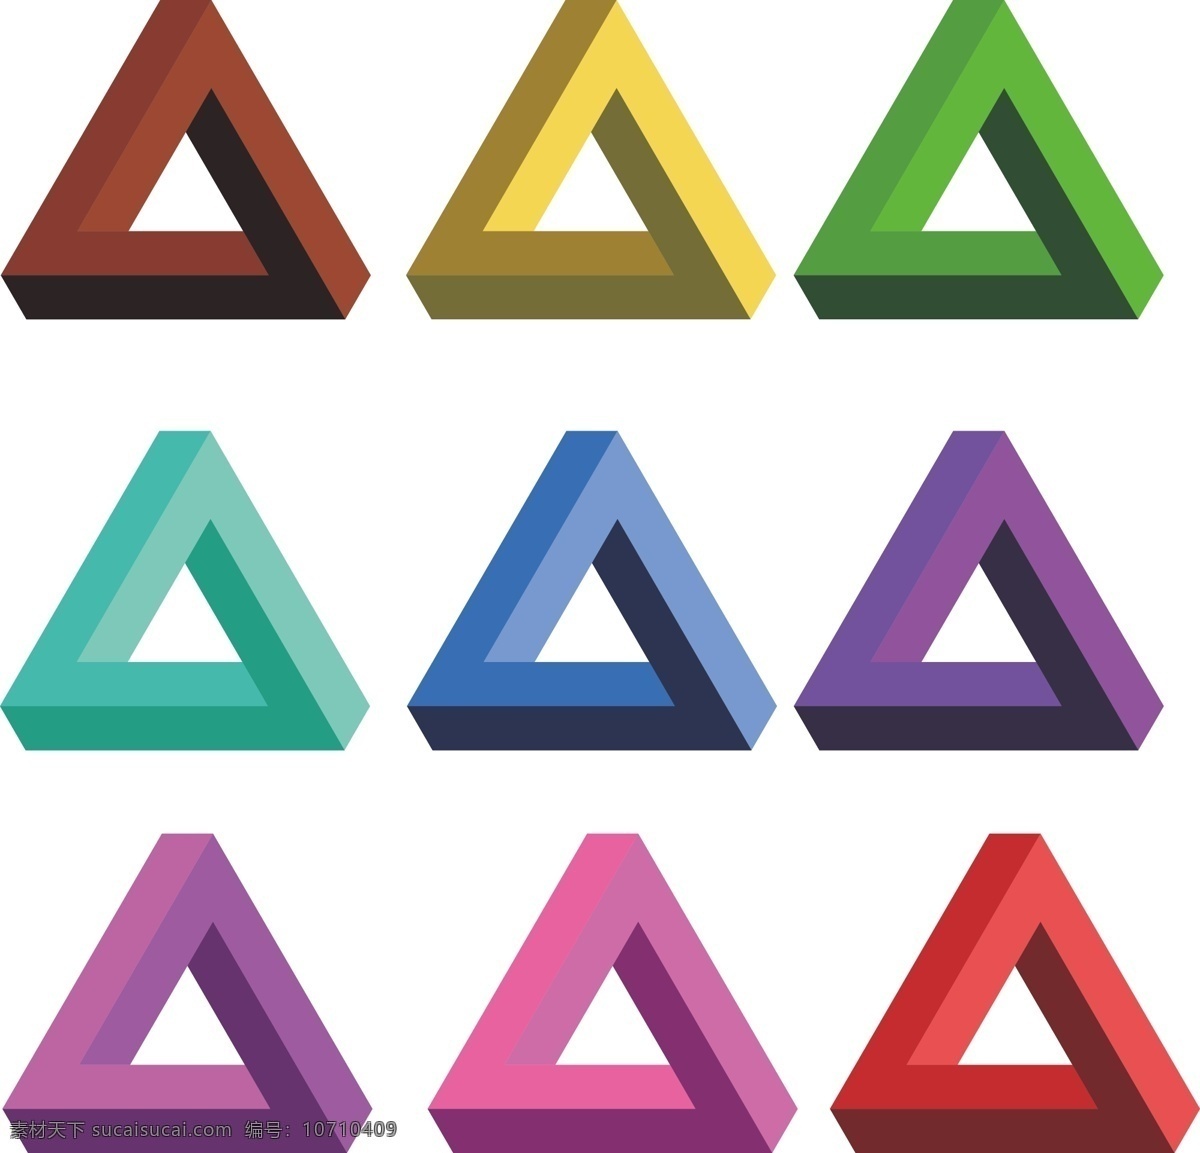 彭罗斯 penrose 三角形 彭罗斯三角形 不可能三角形 三角 现代设计 无理图形 透视 目光 改变 思维 矛盾空间 埃舍尔 作品 二维 三维 非现实 可能 超现实 空间结构 triangle 文化艺术